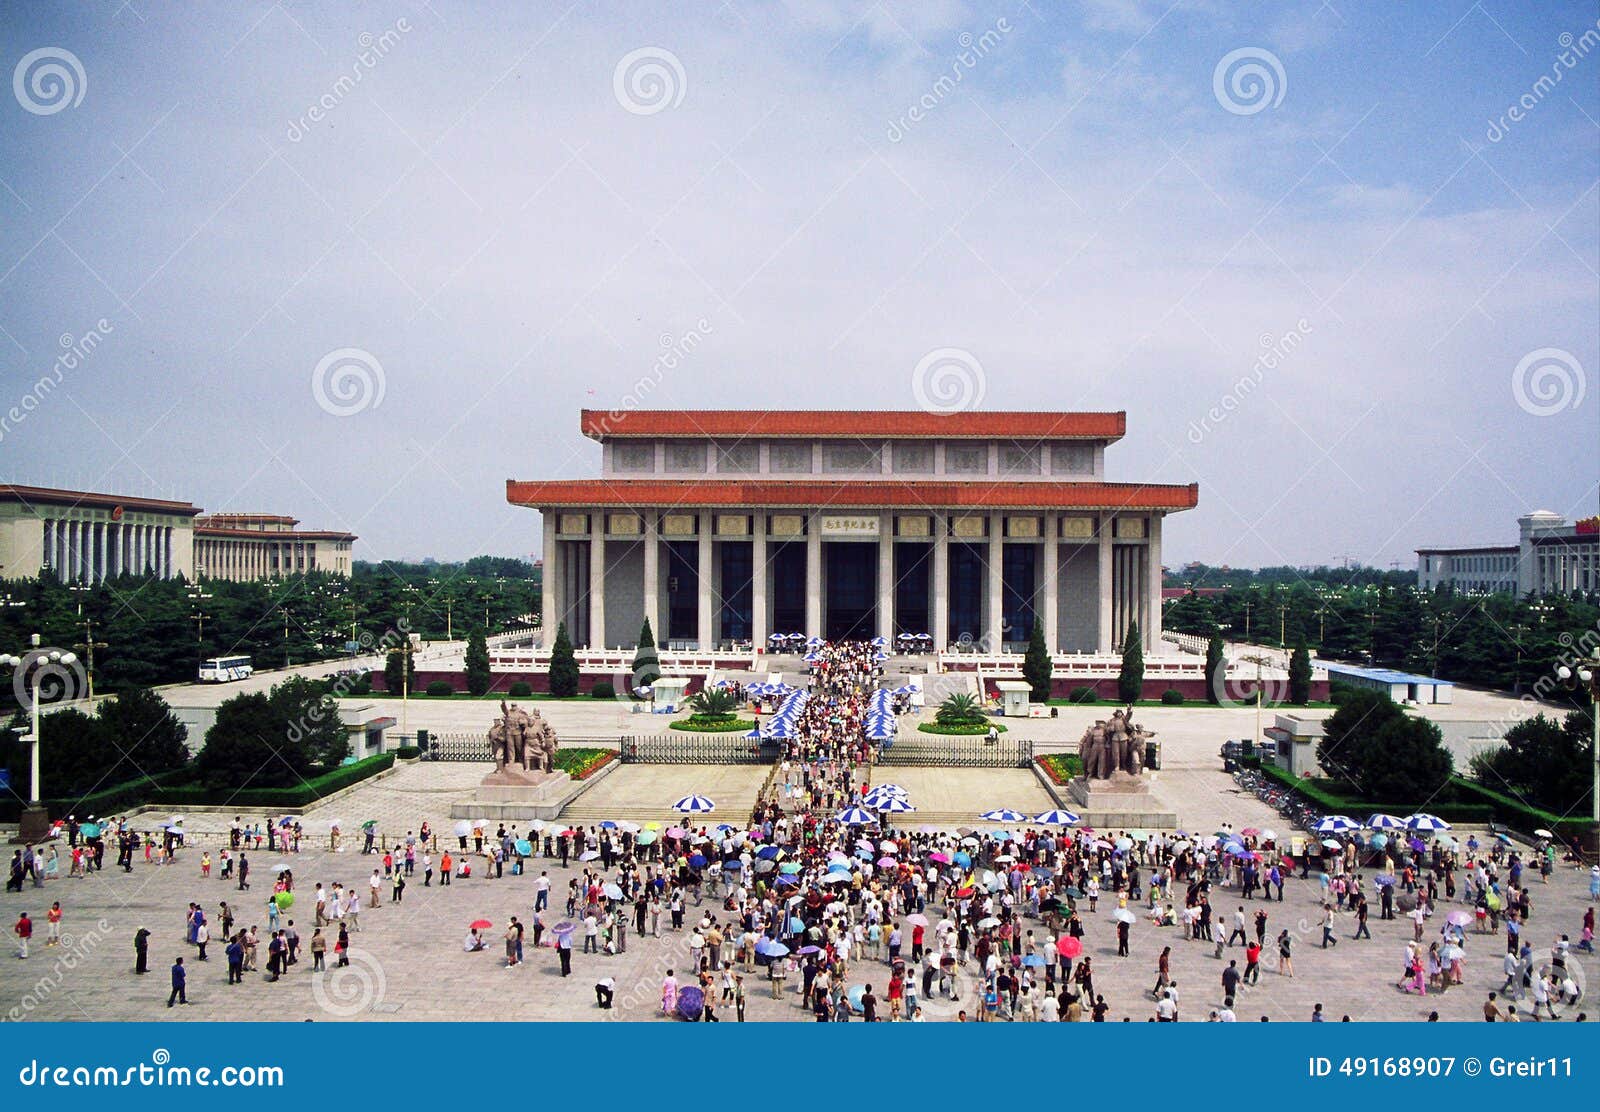 mausoleum of mao zedong in tienanmen square in beijing